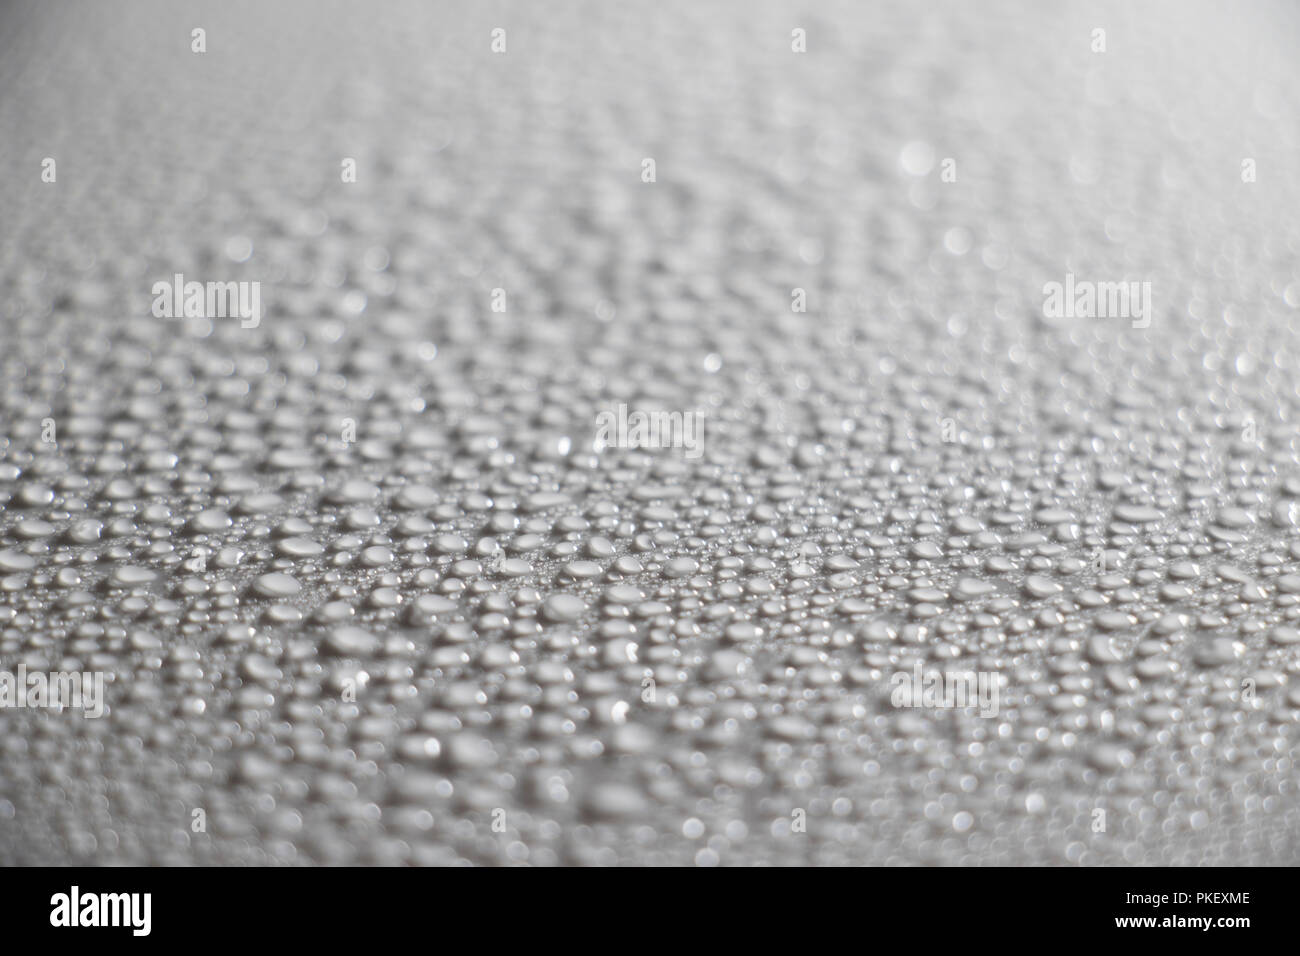 Chiudere dettagliata delle gocce d'acqua. Superficie bagnata con goccioline di acqua perle. Foto Stock